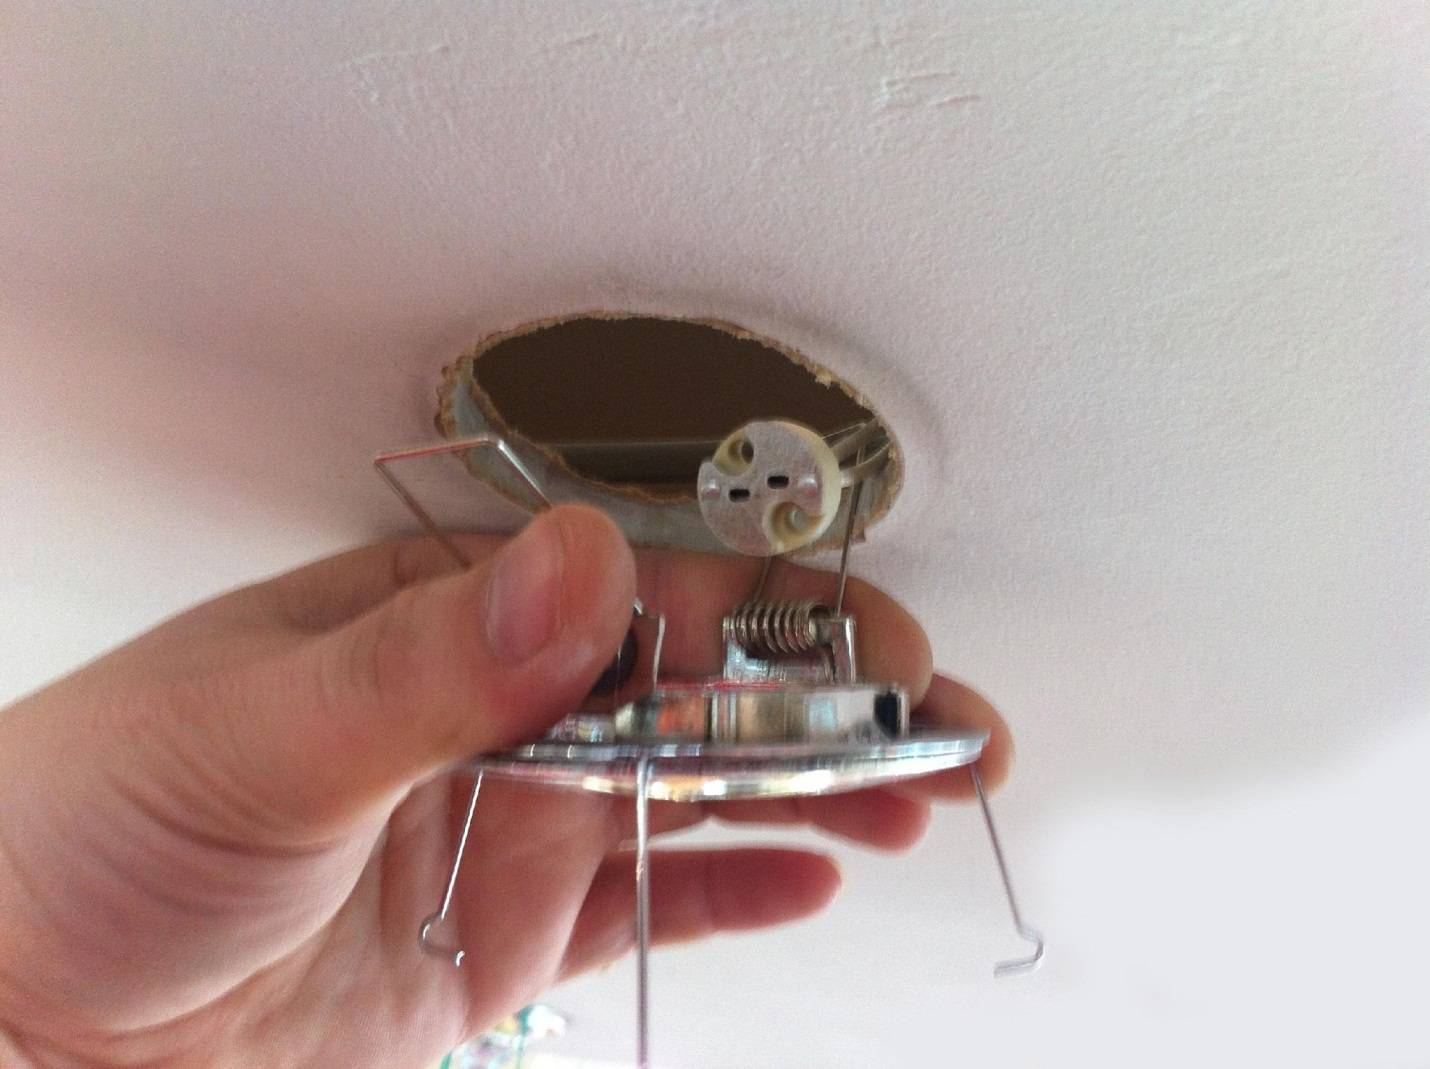 Правила установки светильников в натяжной потолок